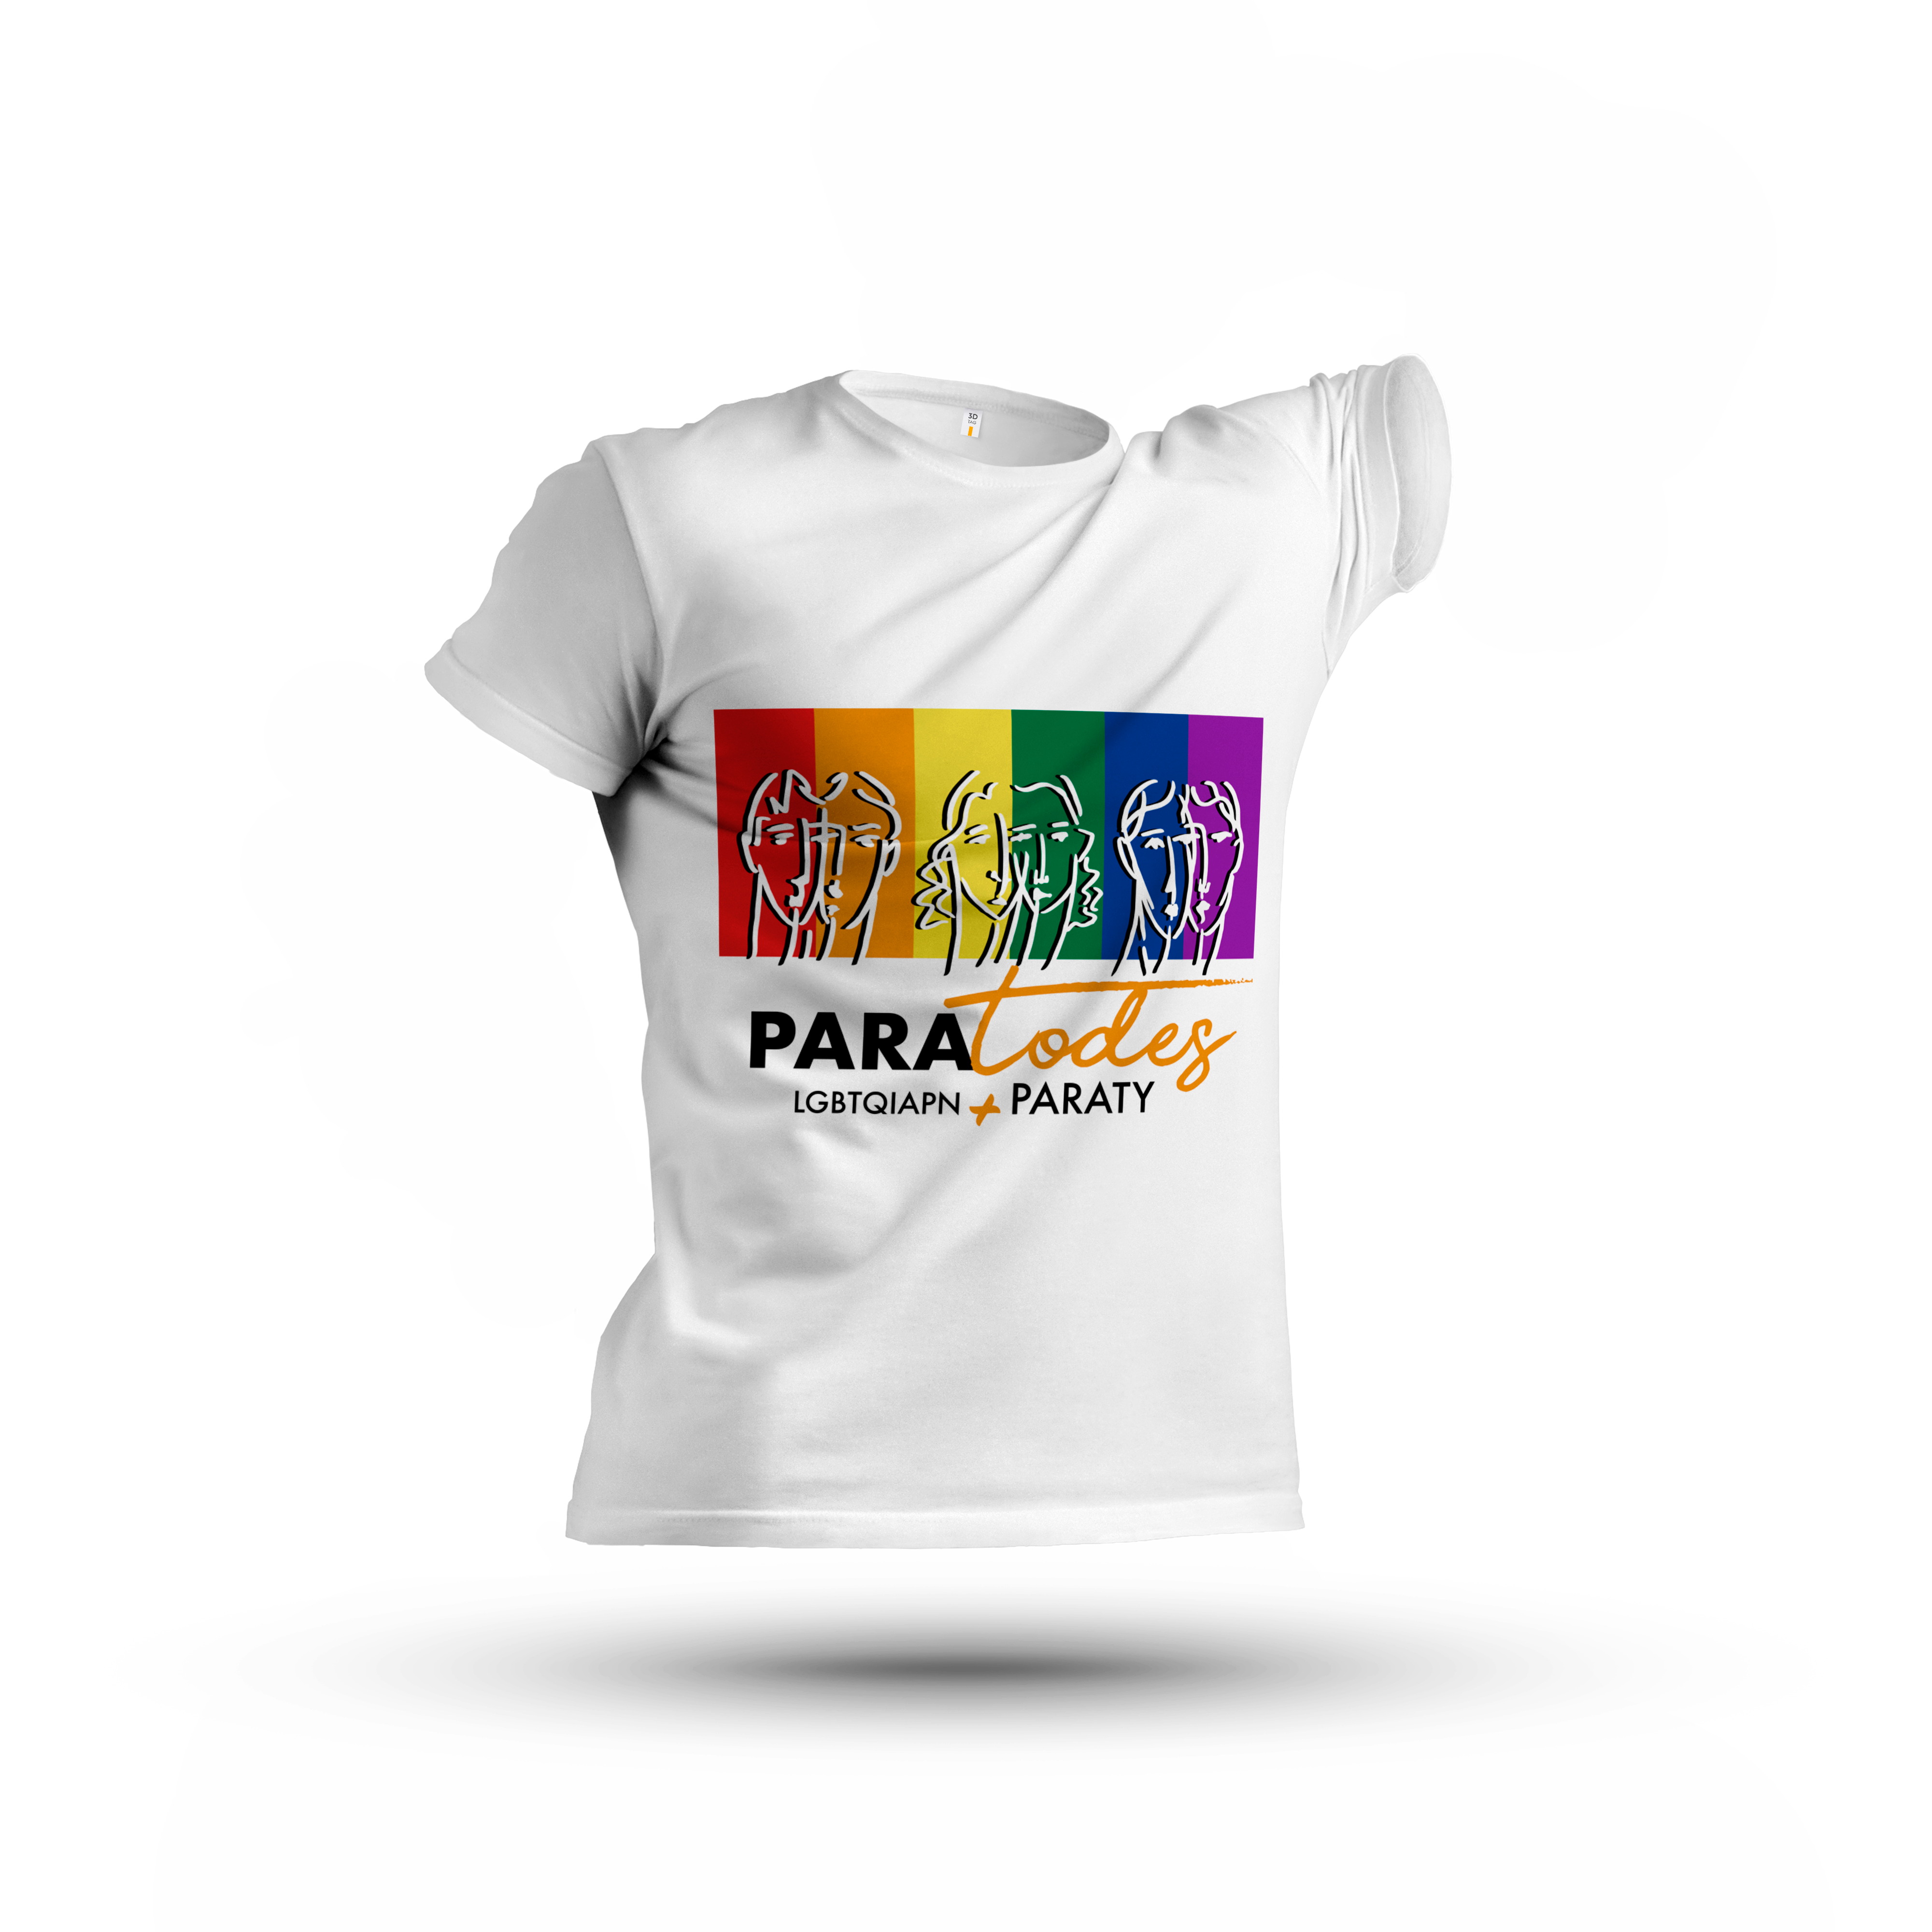 Camiseta PARATODES - R$ 150. Foto: Divulgação